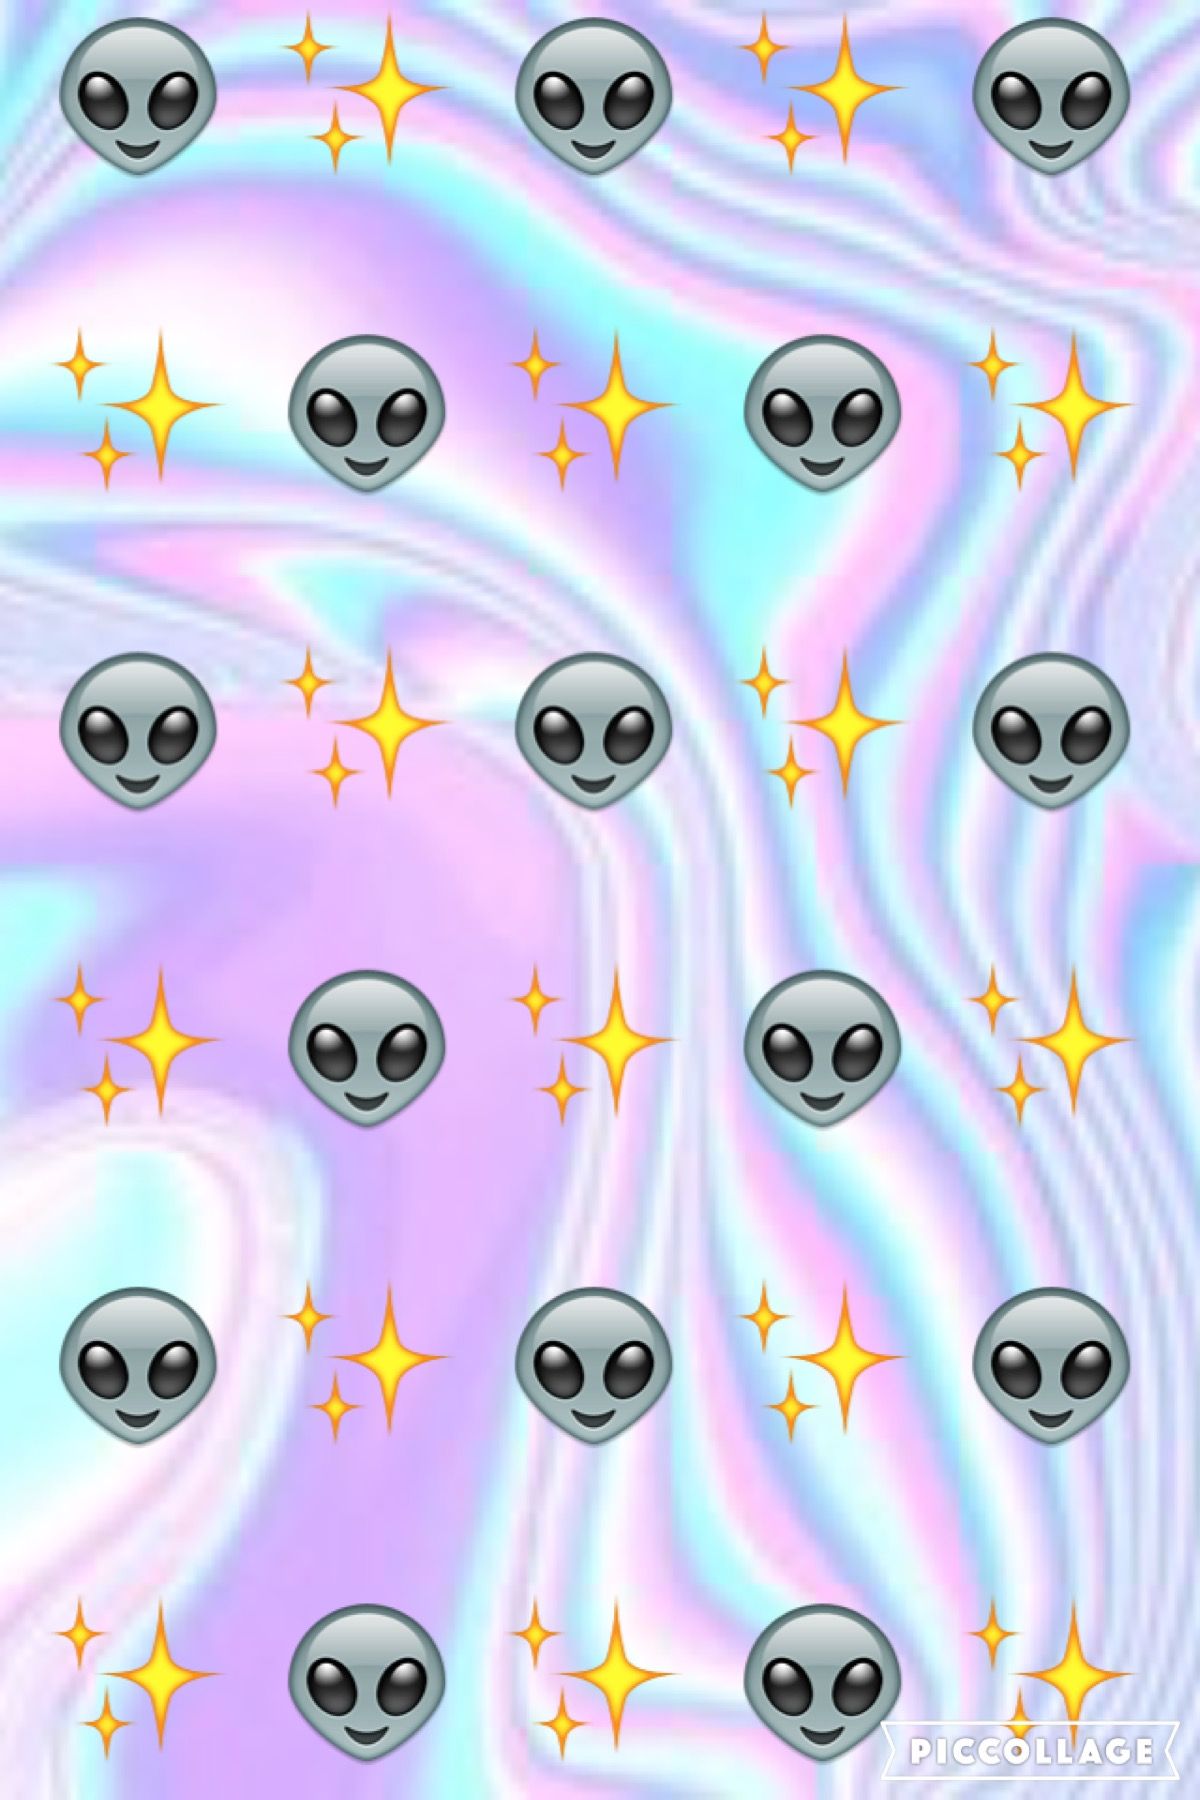 Heres a alien emoji wallpaper I made. Wallpaper iphone, Dinding gambar, Wallpaper emoji